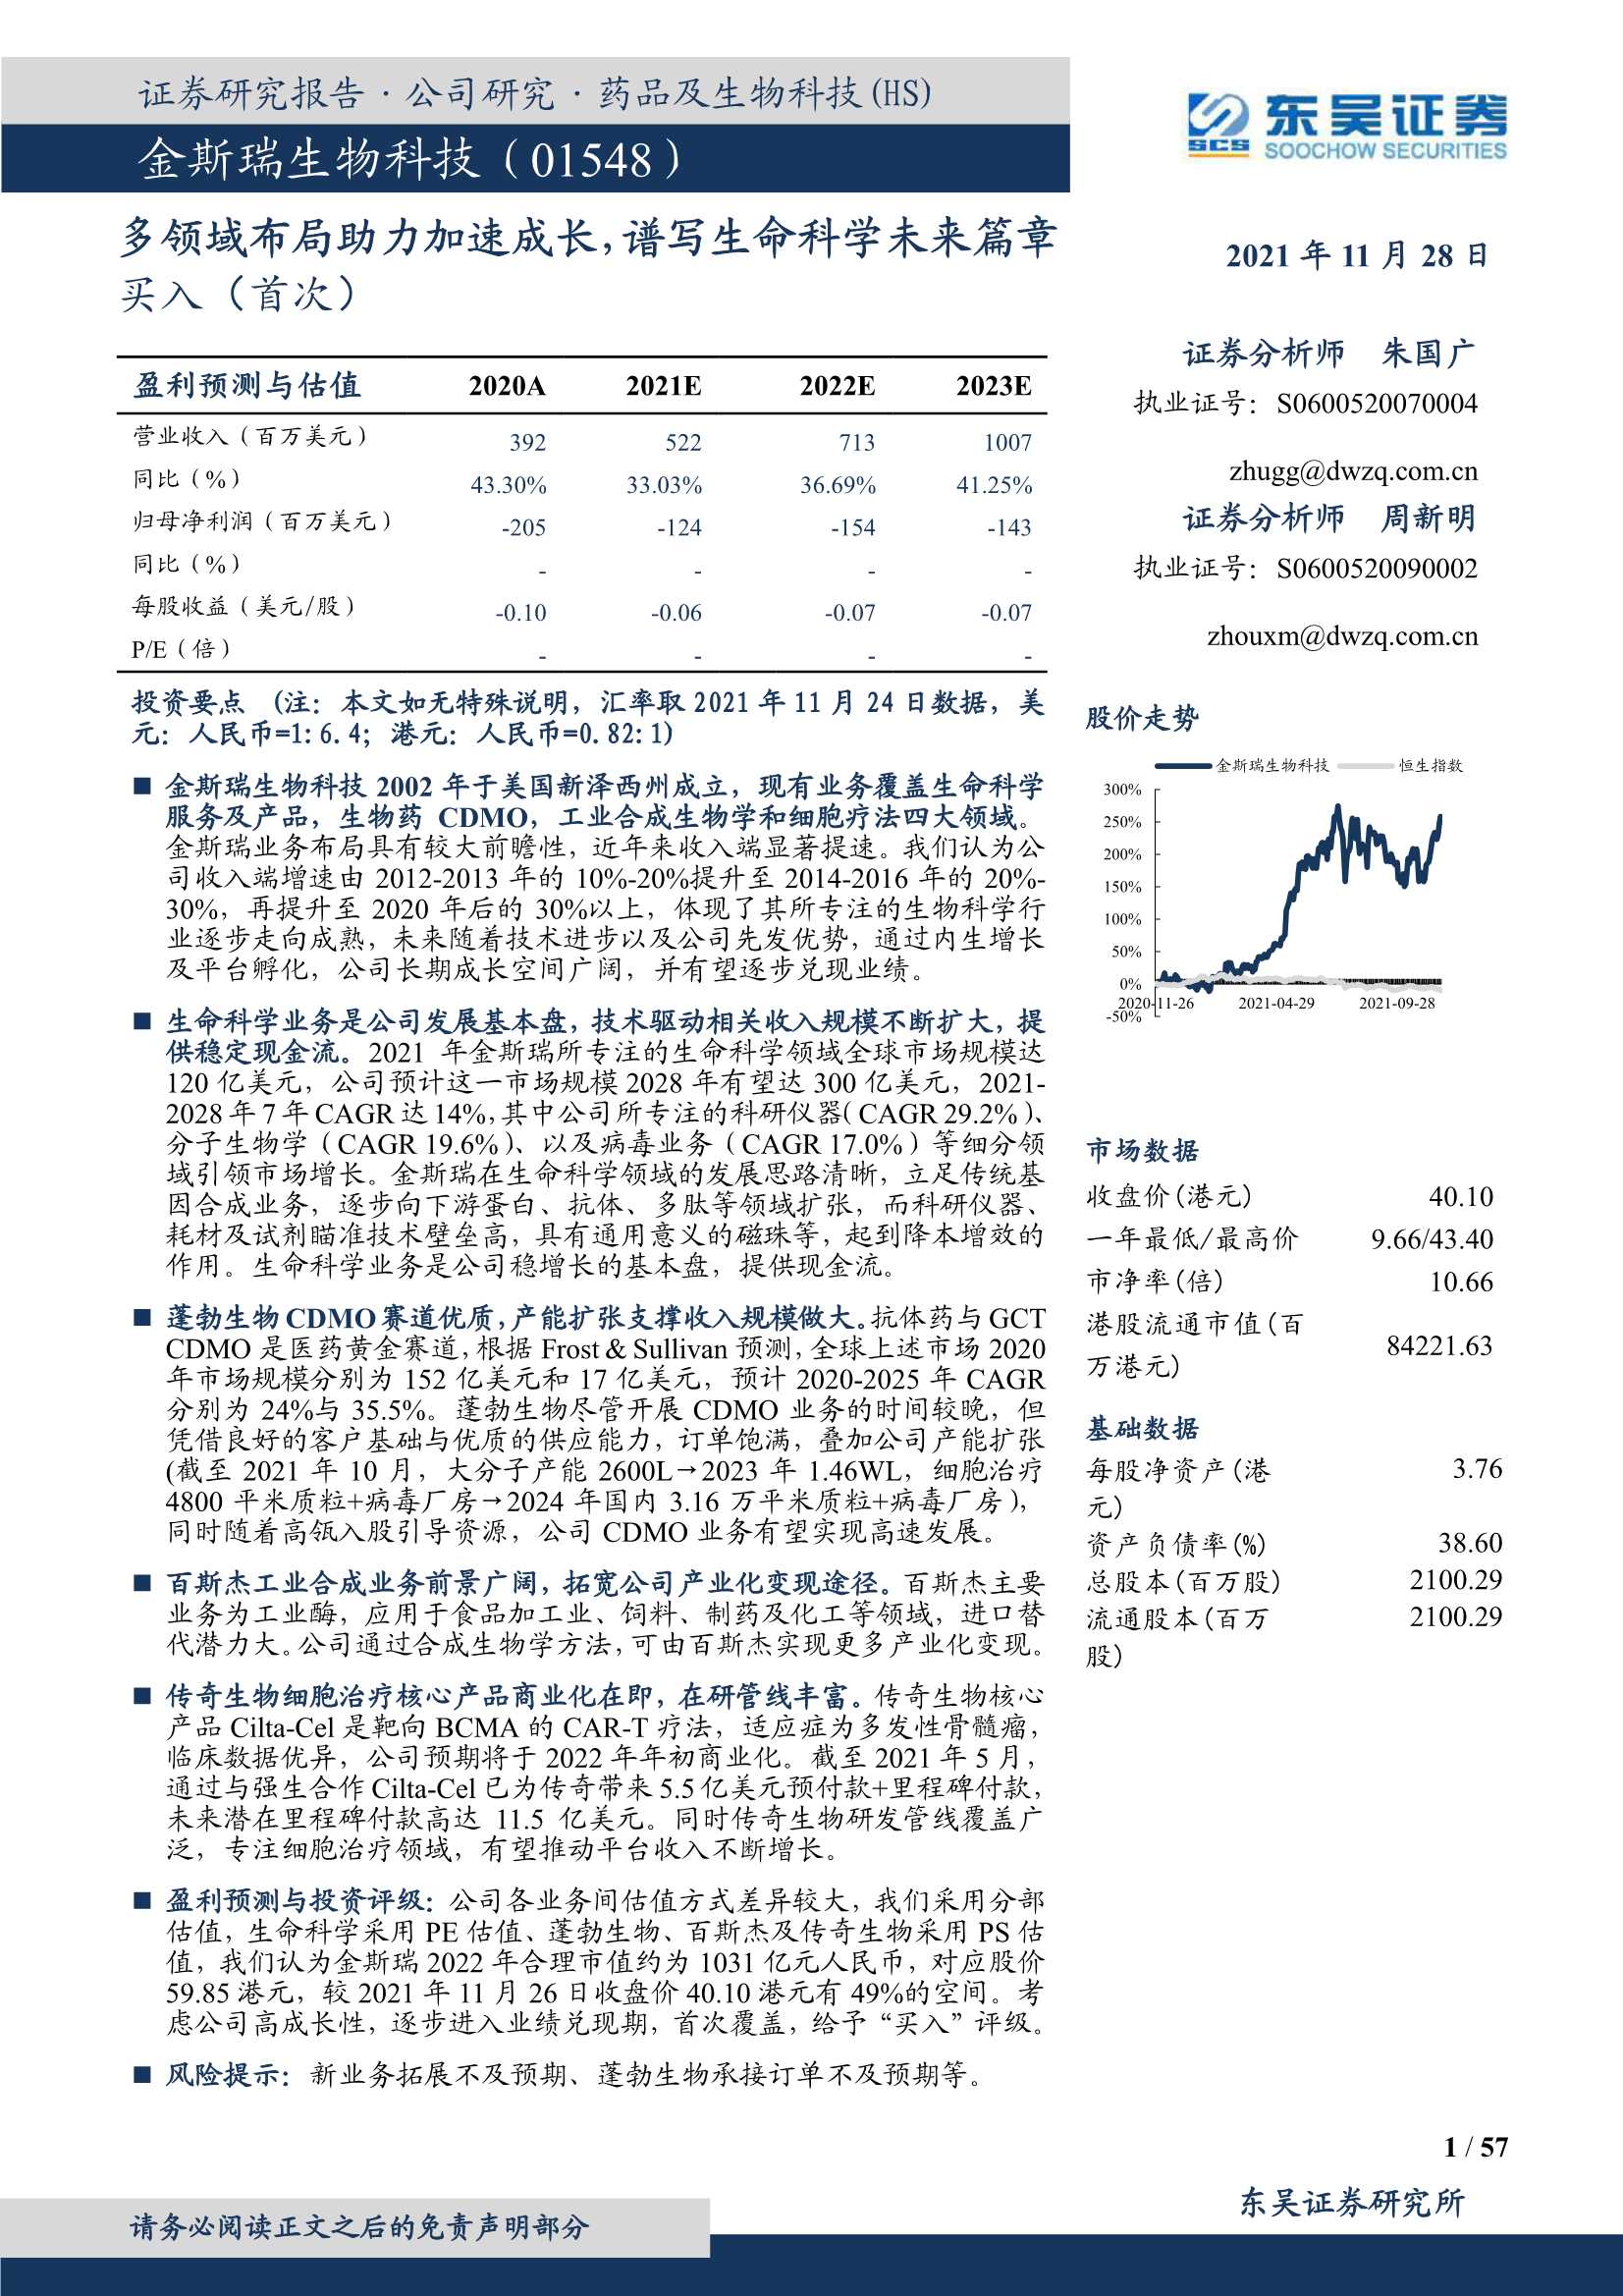 东吴证券-金斯瑞生物科技-1548.HK-多领域布局助力加速成长，谱写生命科学未来篇章-20211128-57页